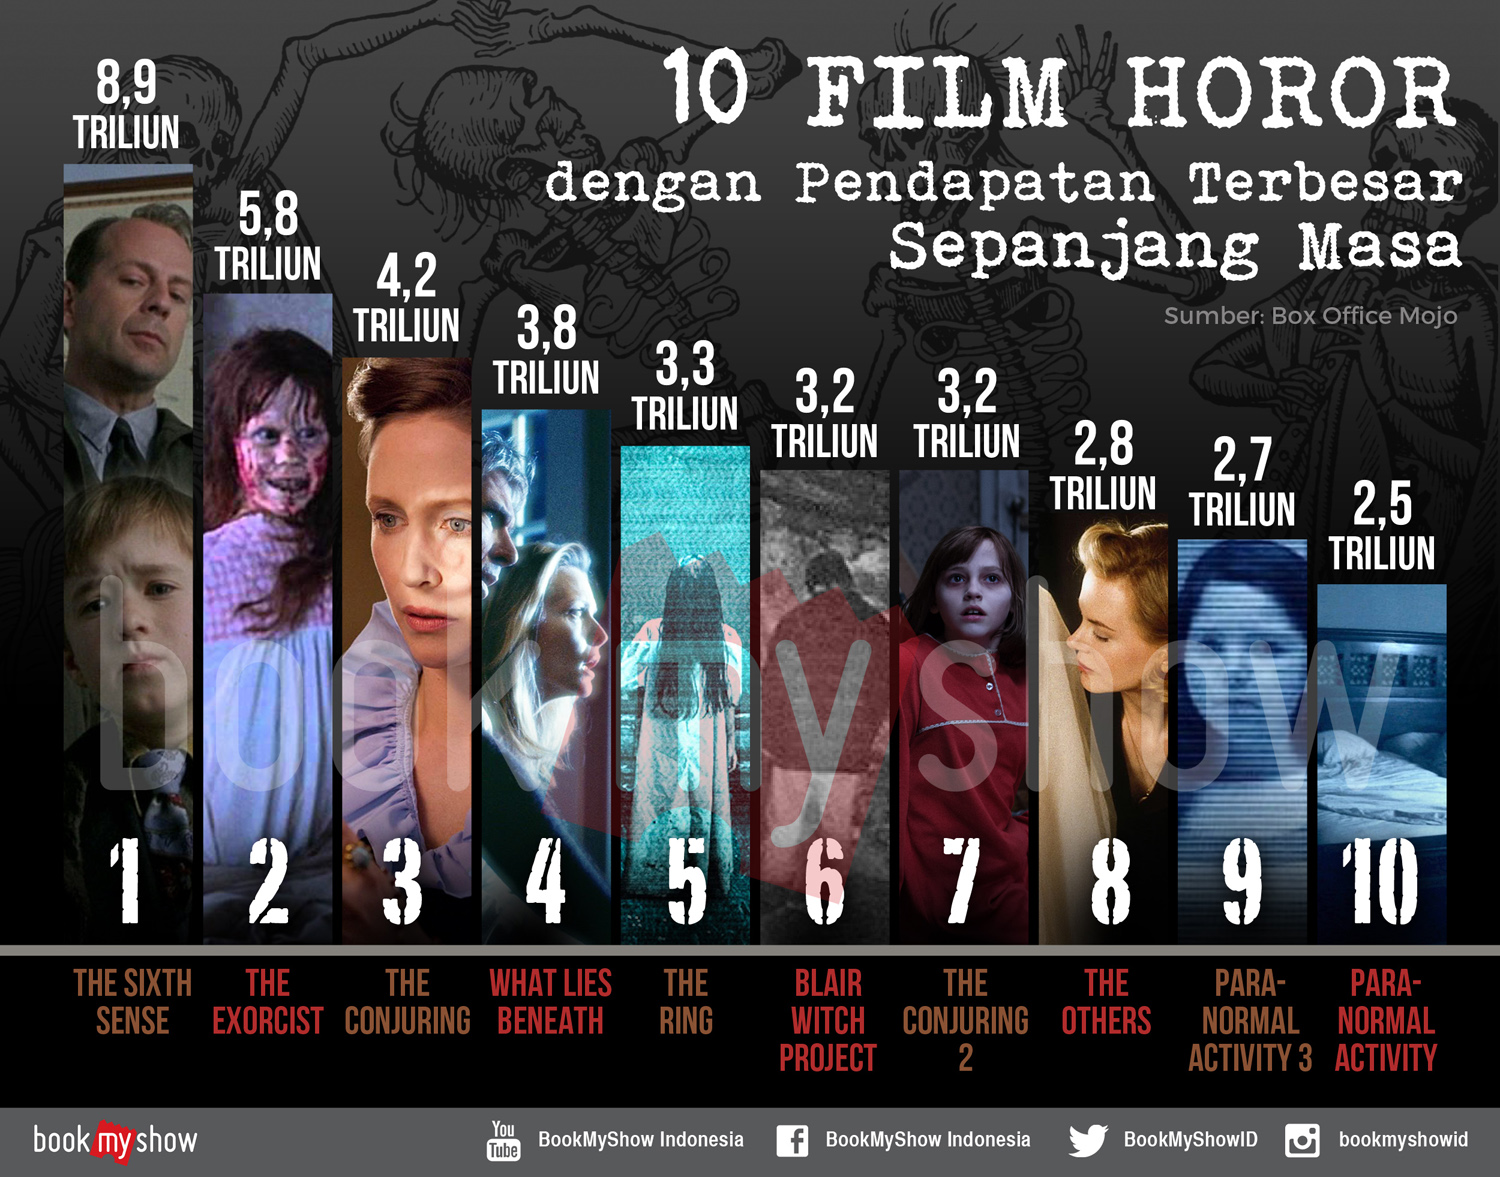 Daftar Film Horor Dengan Pendapatan Terbesar Sepanjang Masa - BookMyShow Indonesia